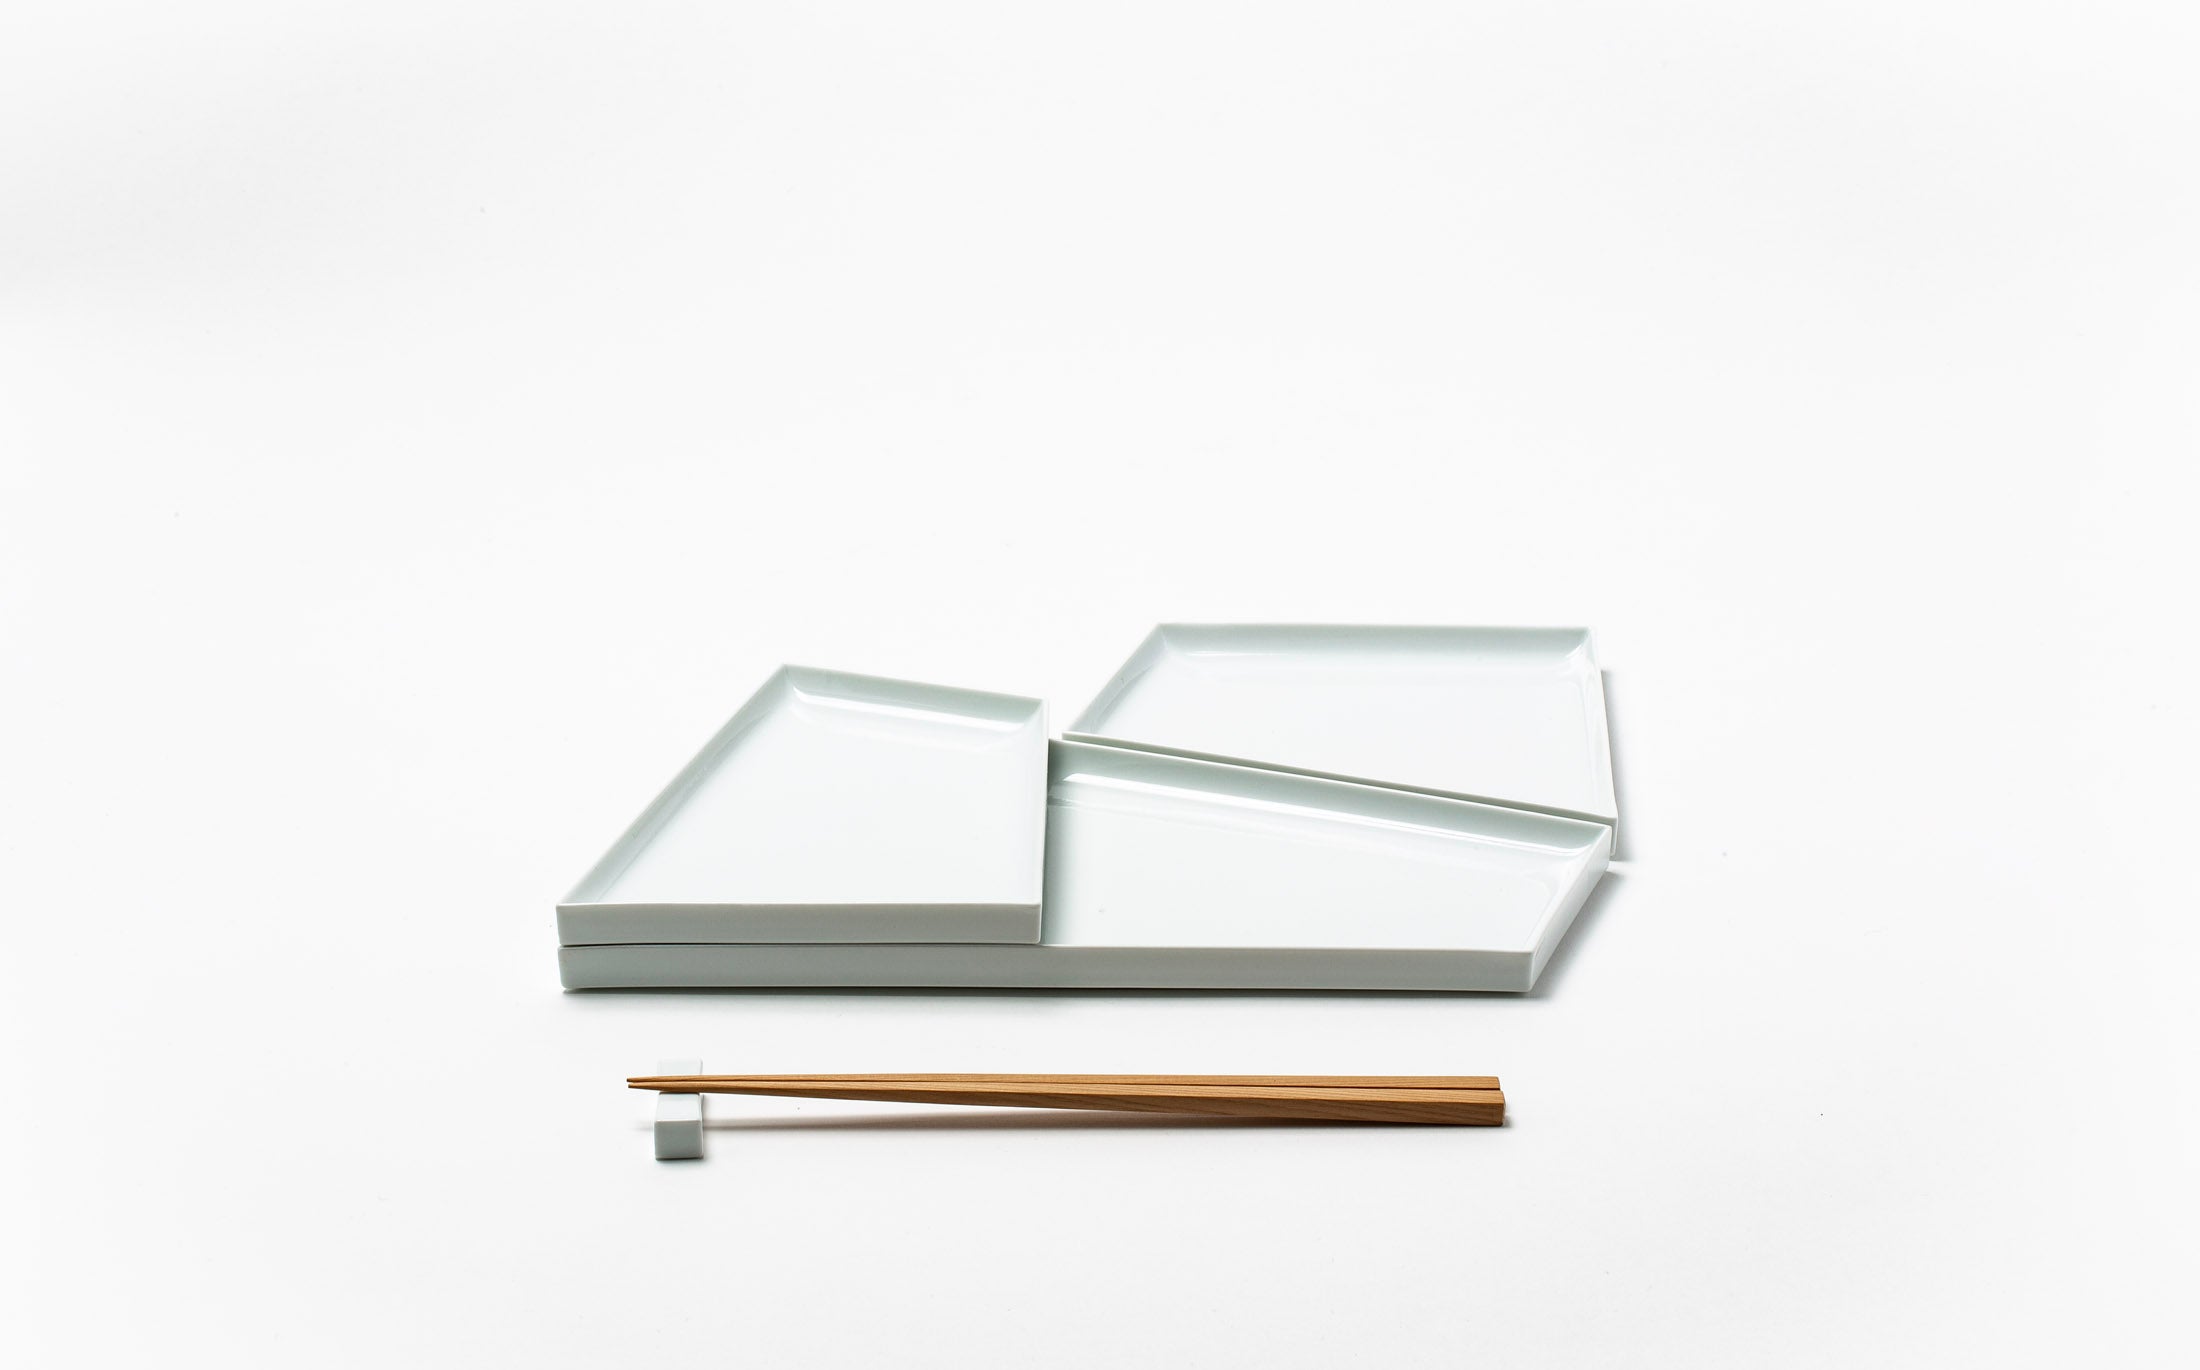 Objet d'Art - Porcelain White - Plate set